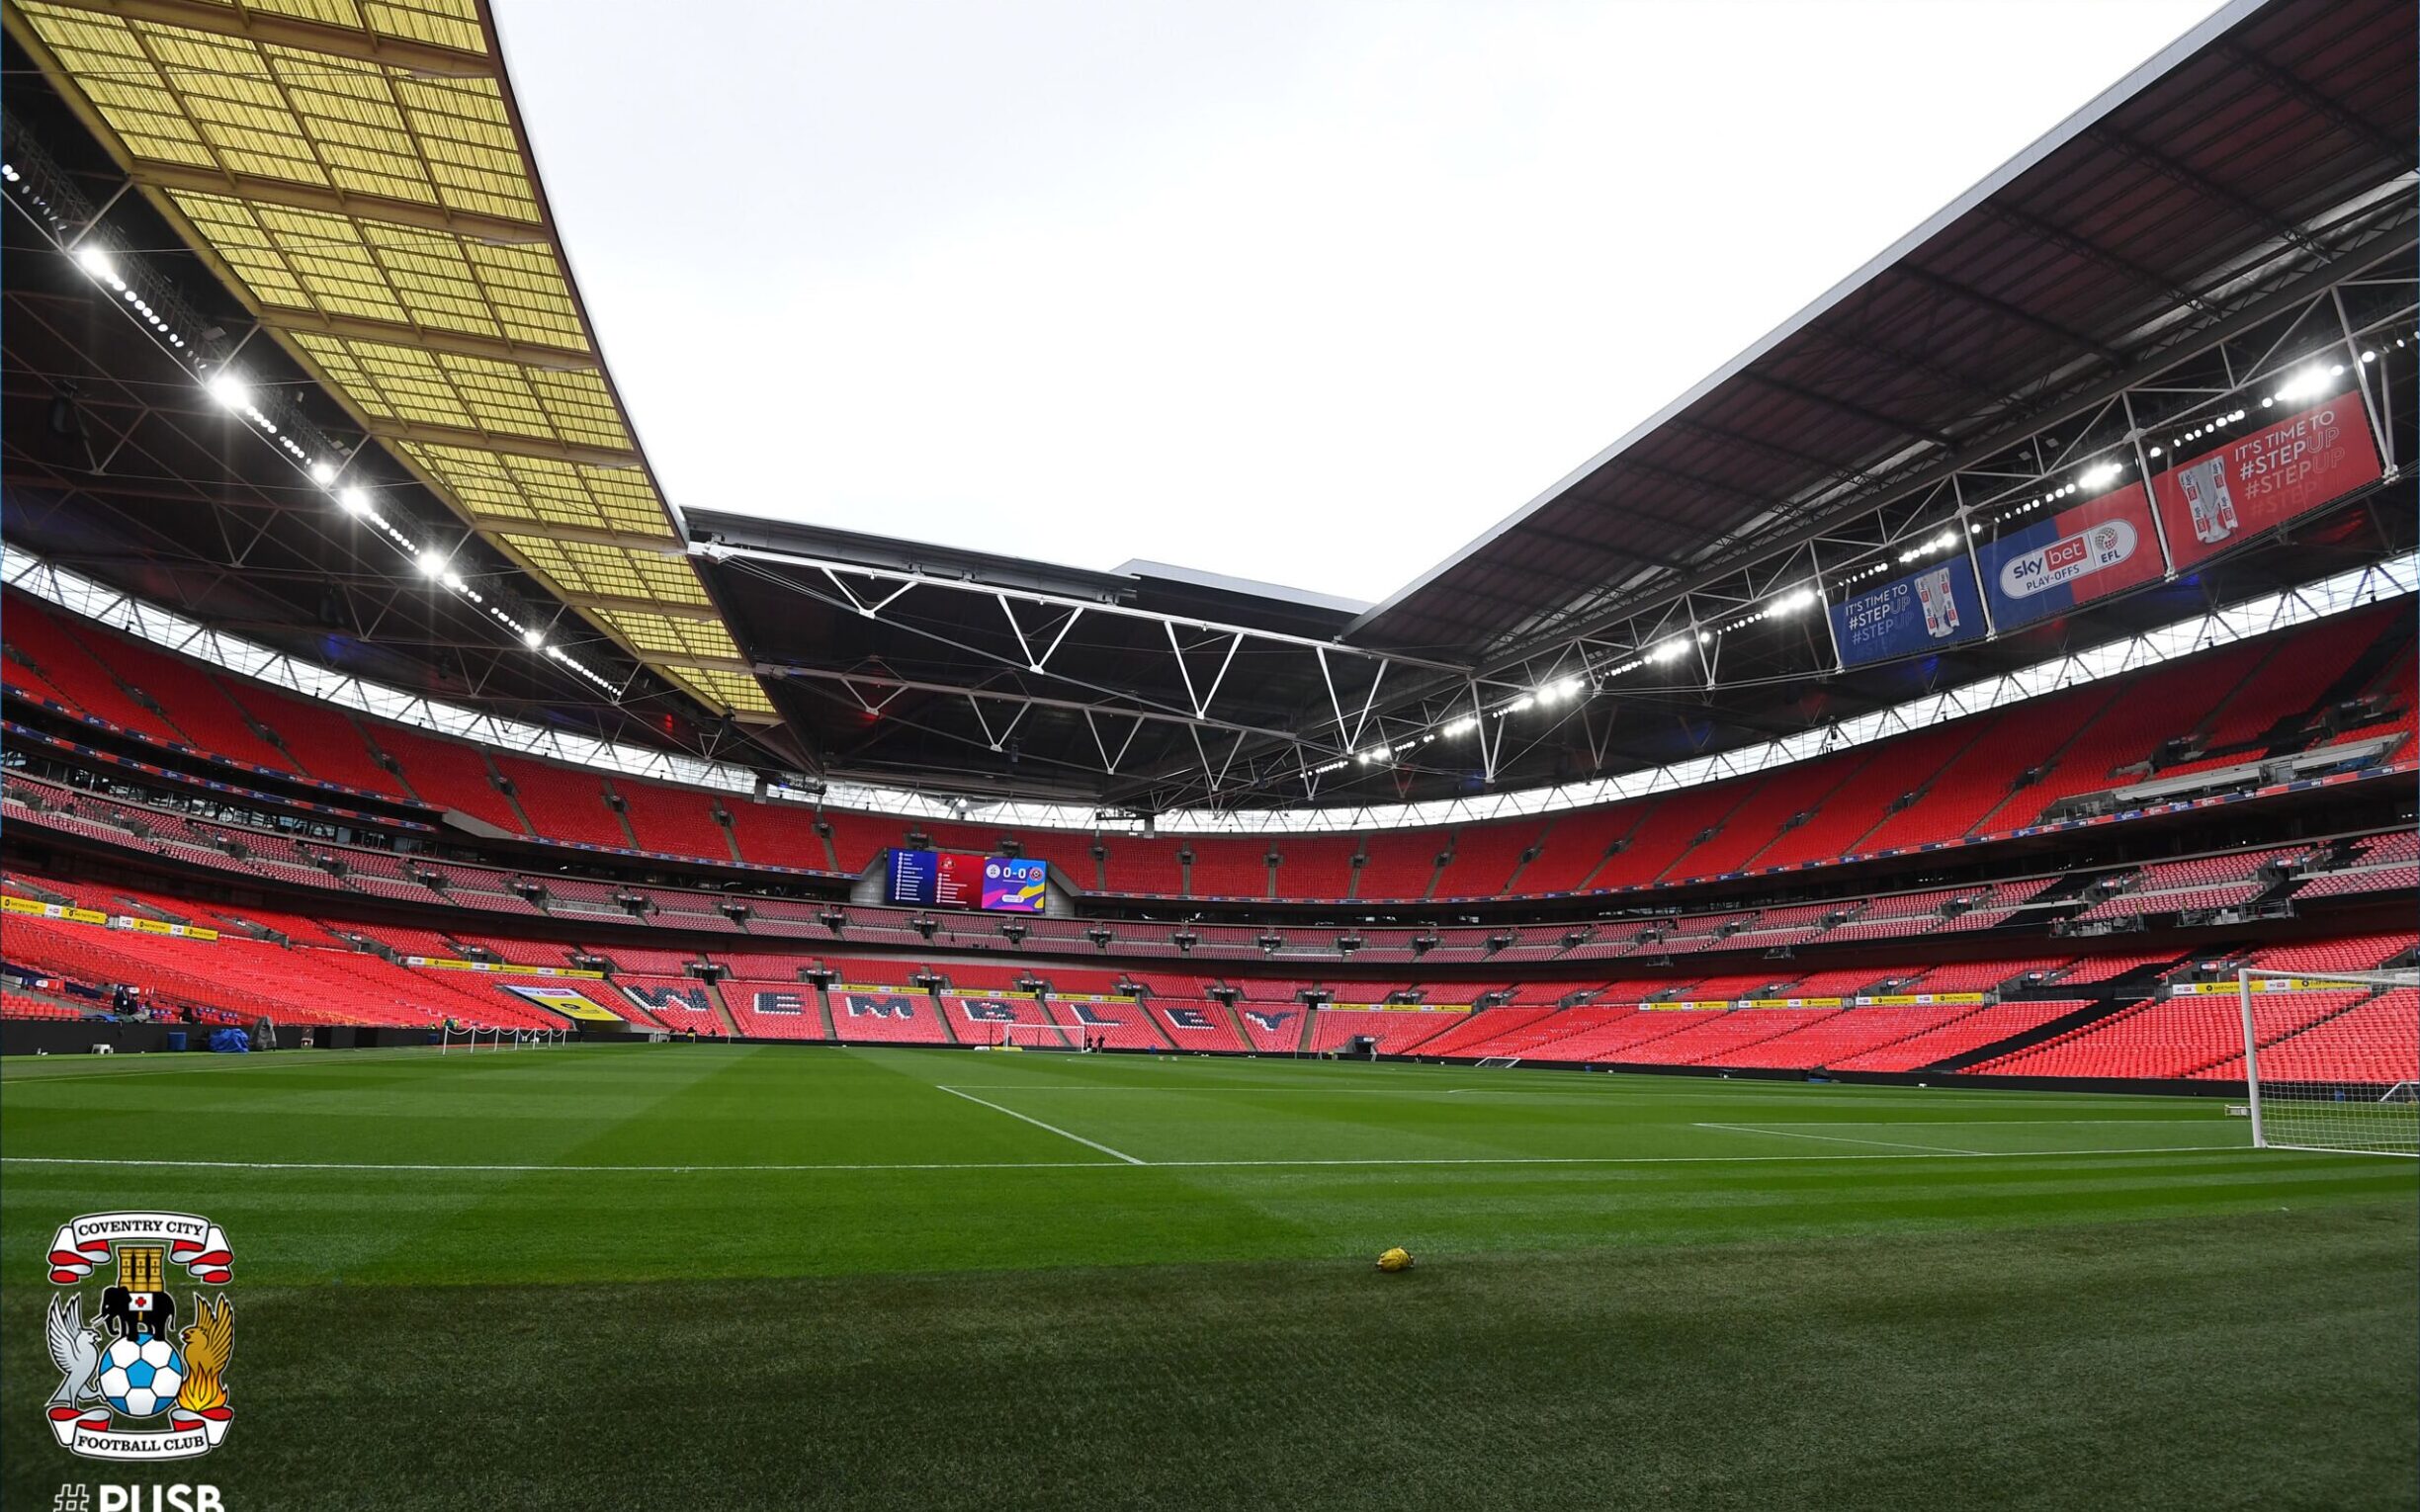 Time da quarta divisão inglesa terá apoio de 8 mil torcedores em jogo  histórico no estádio do City, futebol internacional